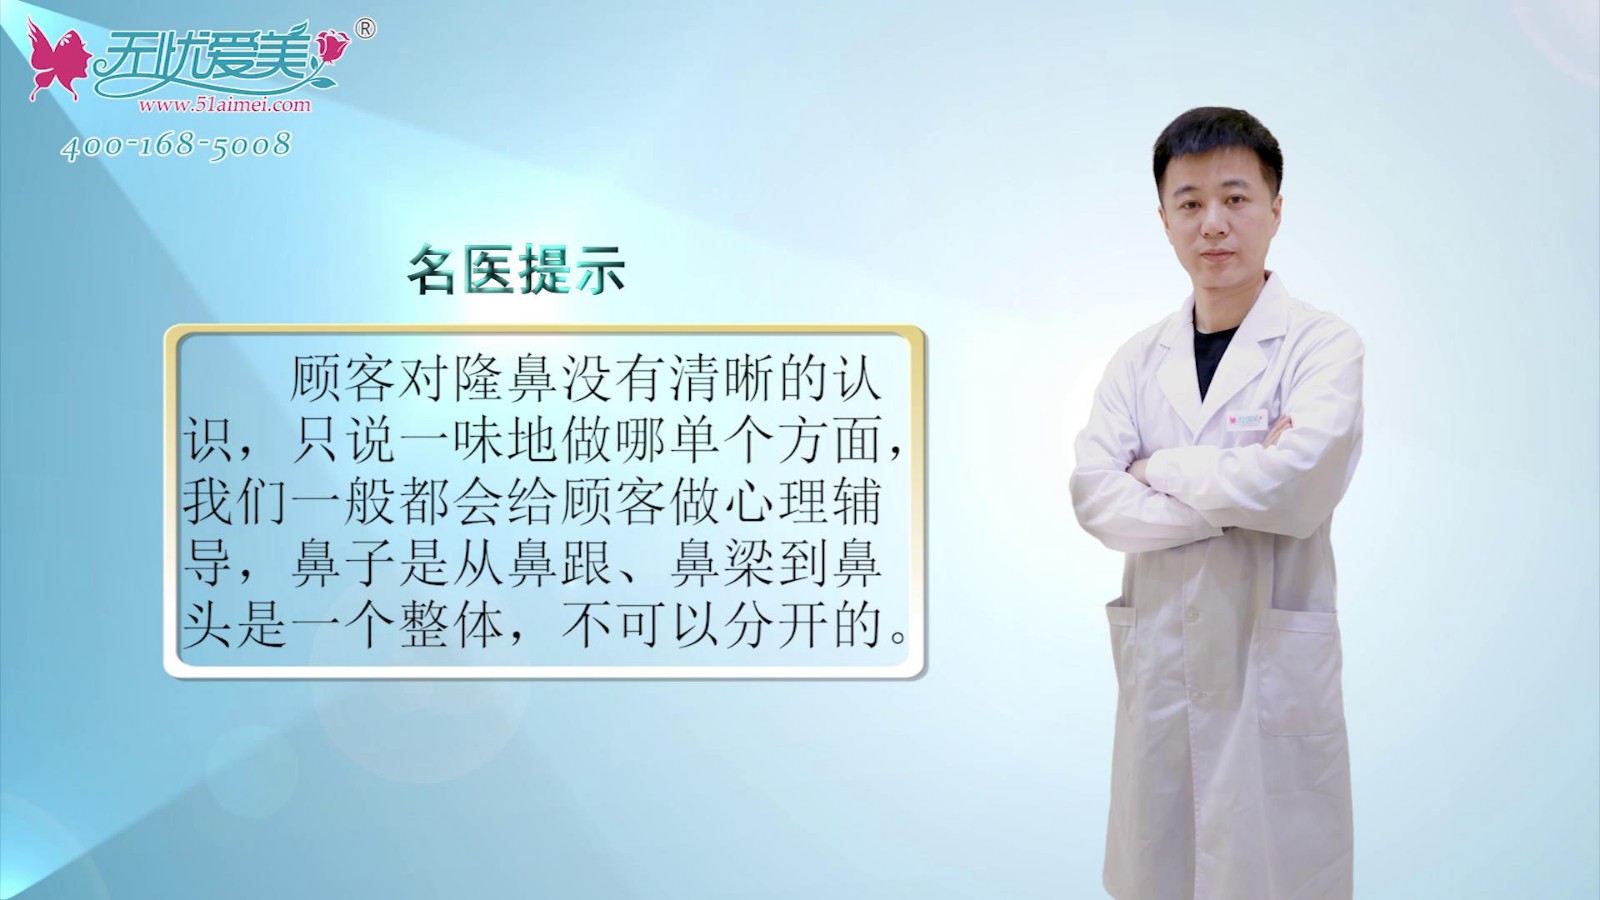 隆鼻的误区有哪些?来看南京鼻祖张哲医生视频解析